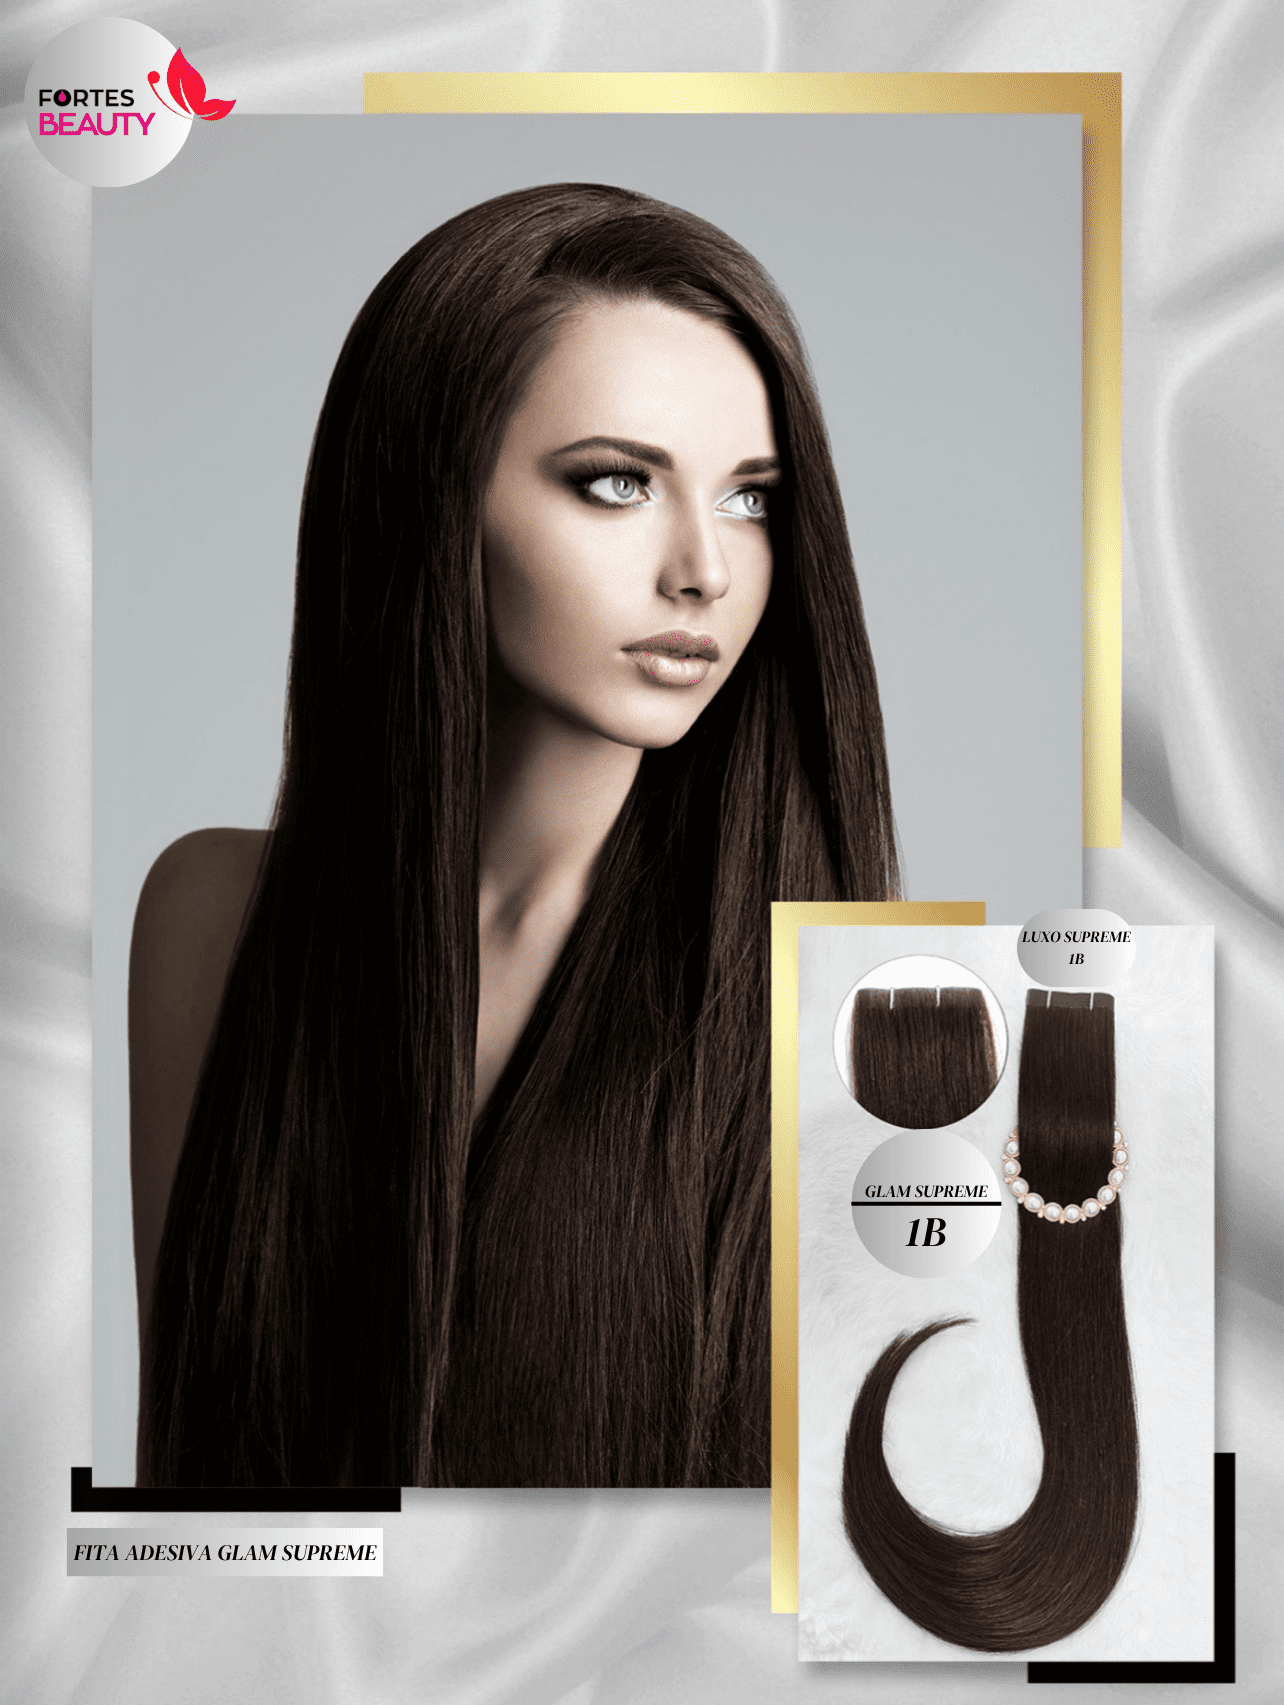 Mega Hair de Fita adesiva Ultra fina - Glam Supreme 70 Gramas - Fortes  Beauty - Loja de Cosméticos